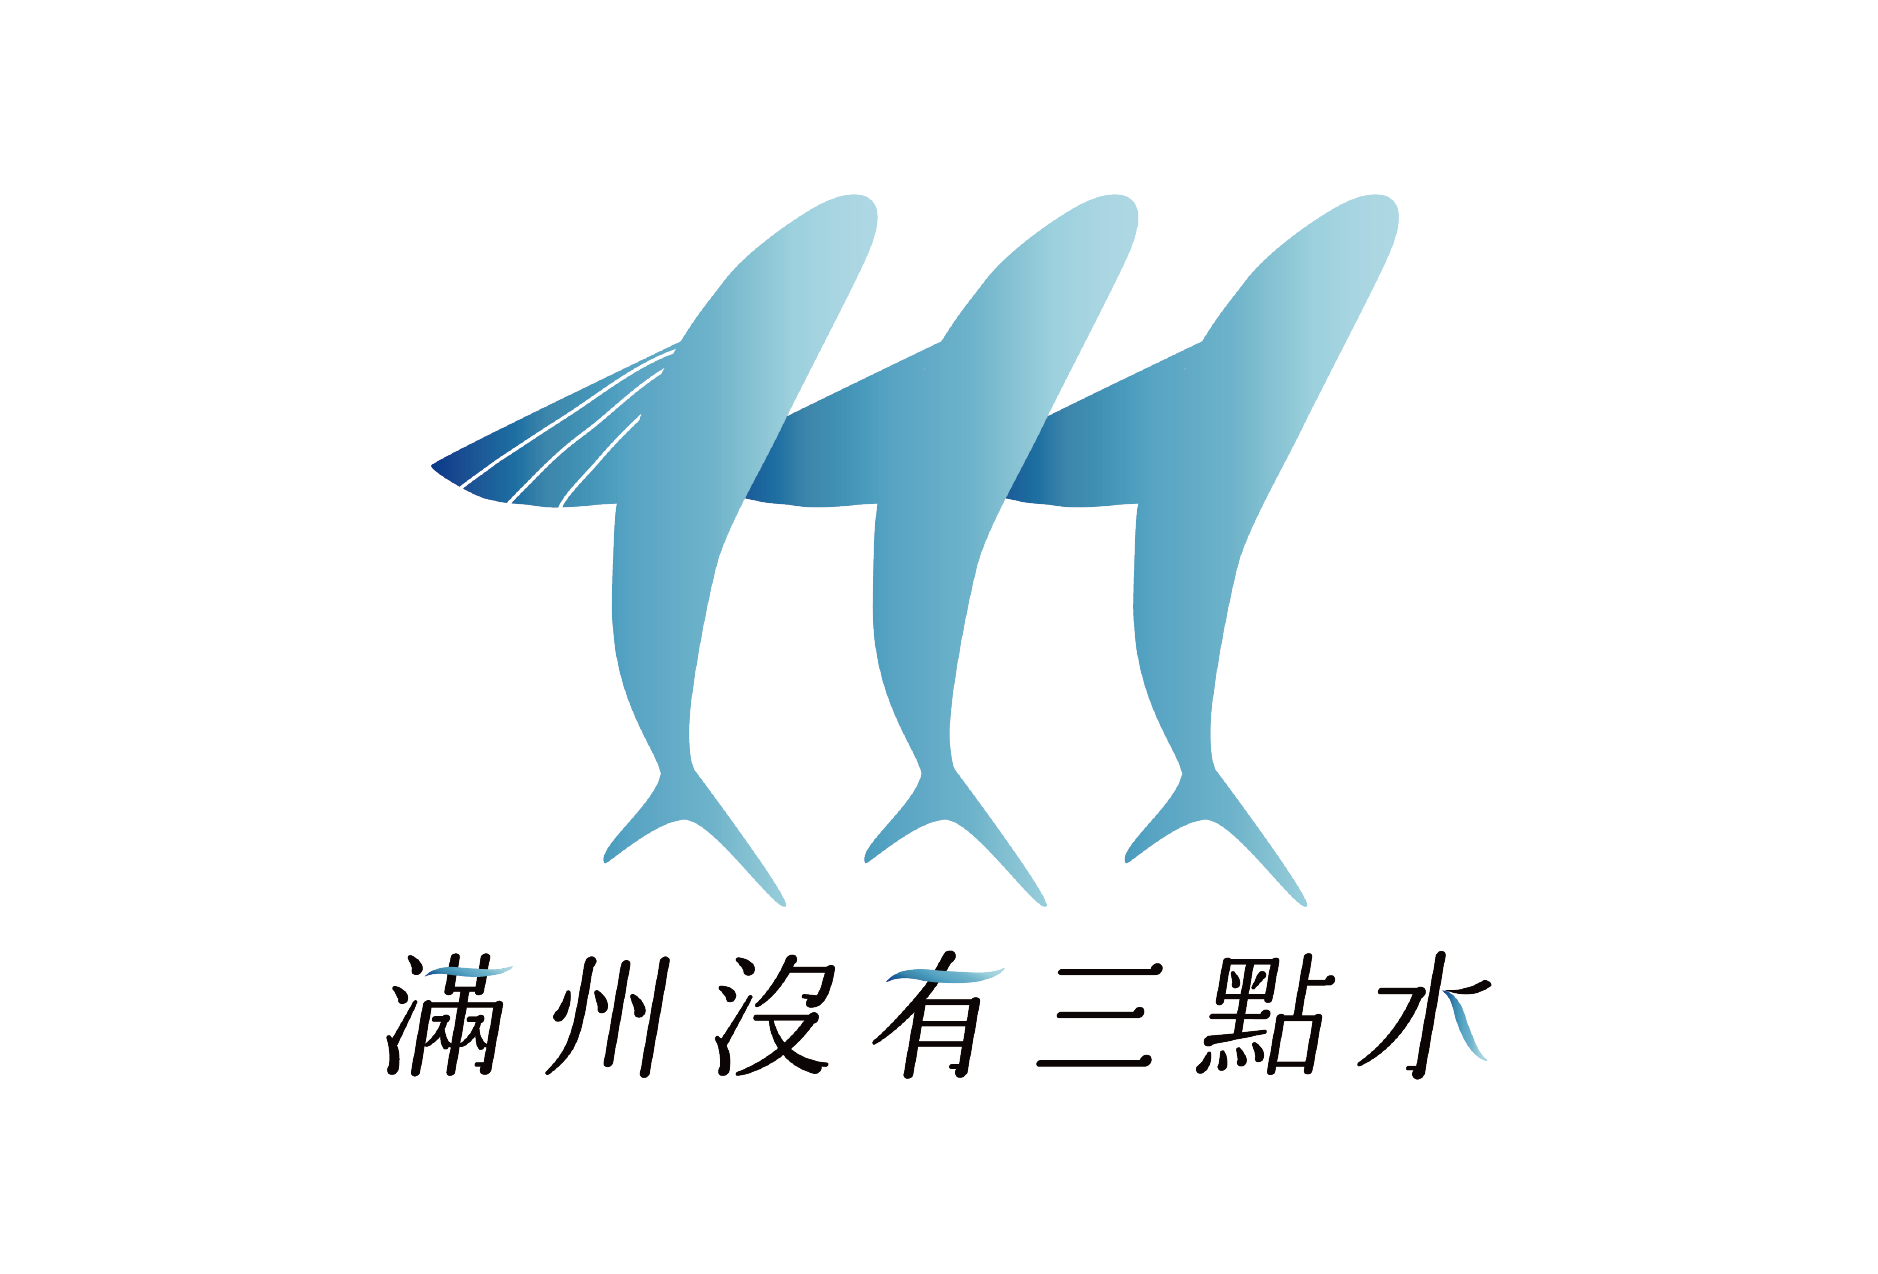 滿州沒有三點水青年共識 logo